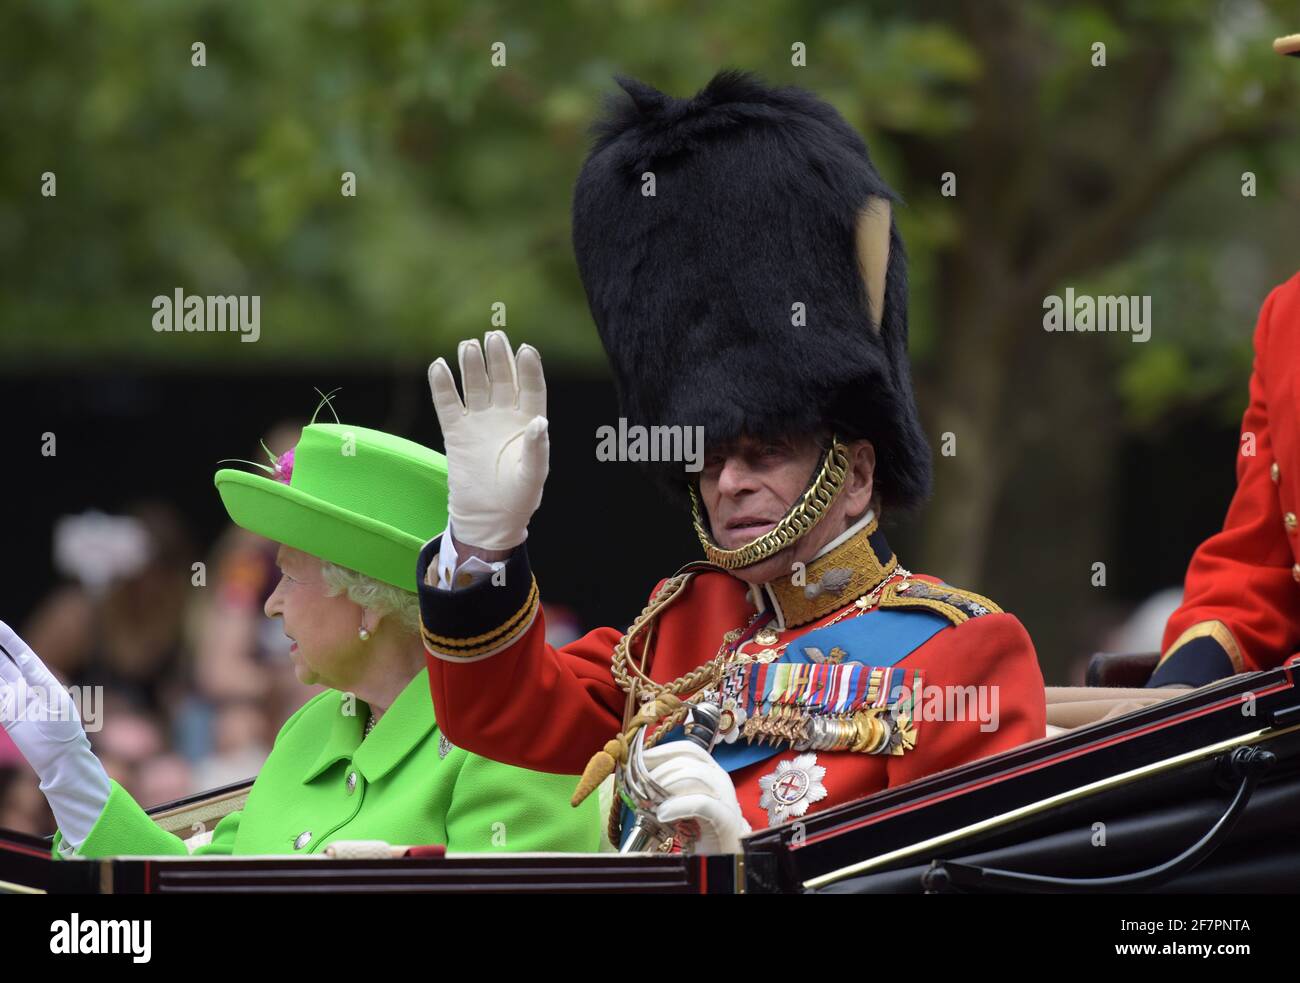 DOSSIER : Prince Phllip Dead à 99. ROYAUME-UNI. 11 juin 2016. Prince Philip lors de Trooping la couleur et le Queens anniversaire Parade juin 2016 crédit: MARTIN DALTON/Alay Live News Banque D'Images